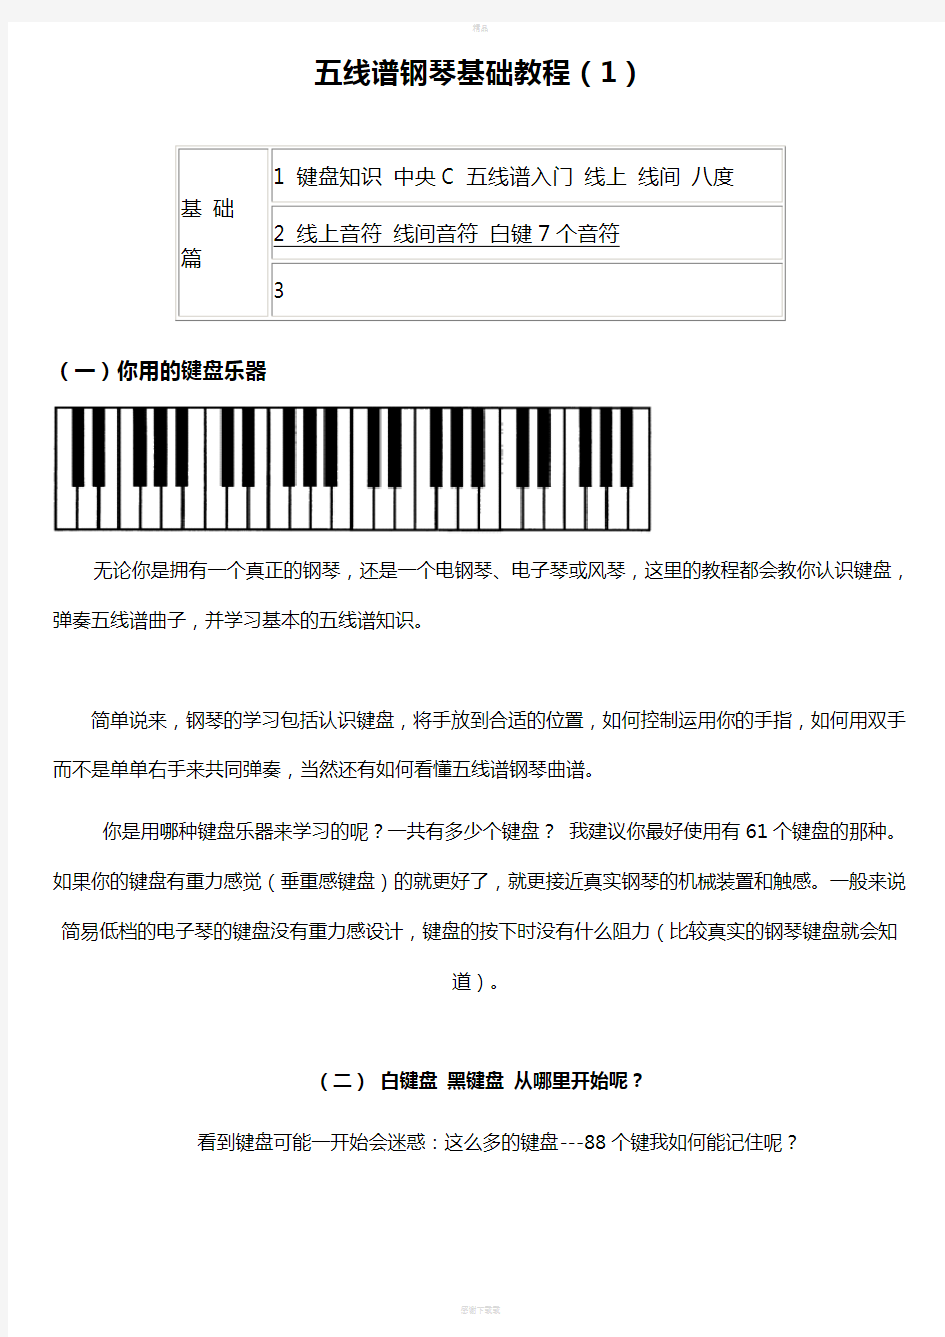 钢琴基础教程(五线谱)37747